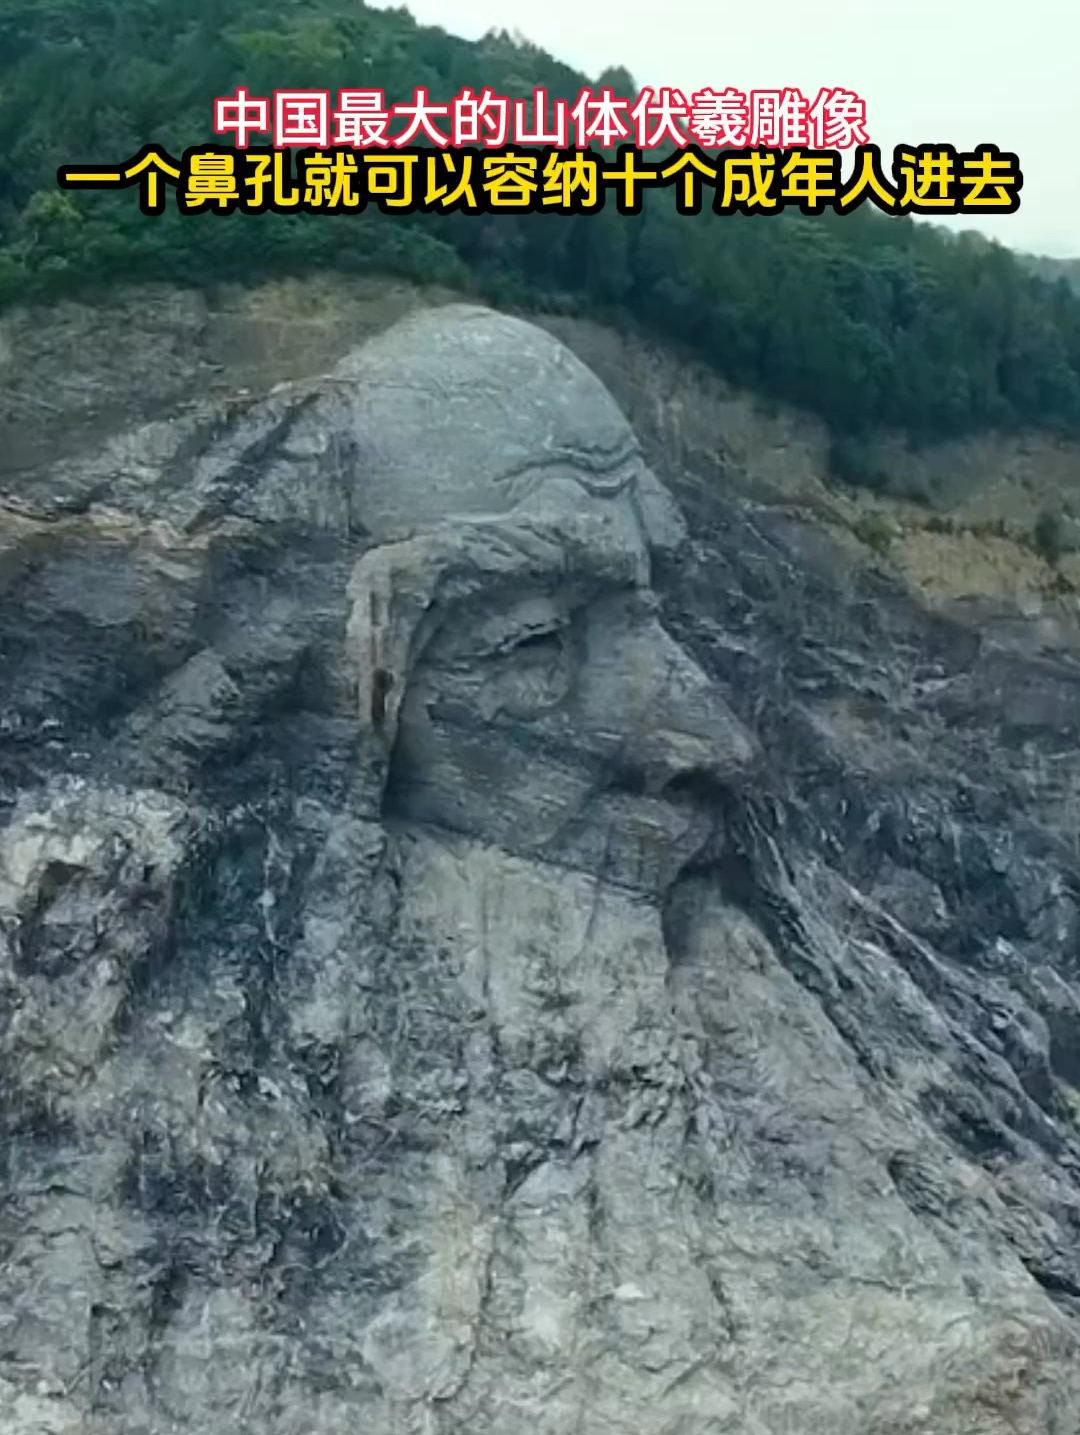 中国最大的山体伏羲雕像，一个鼻孔就可以容纳10个成年人